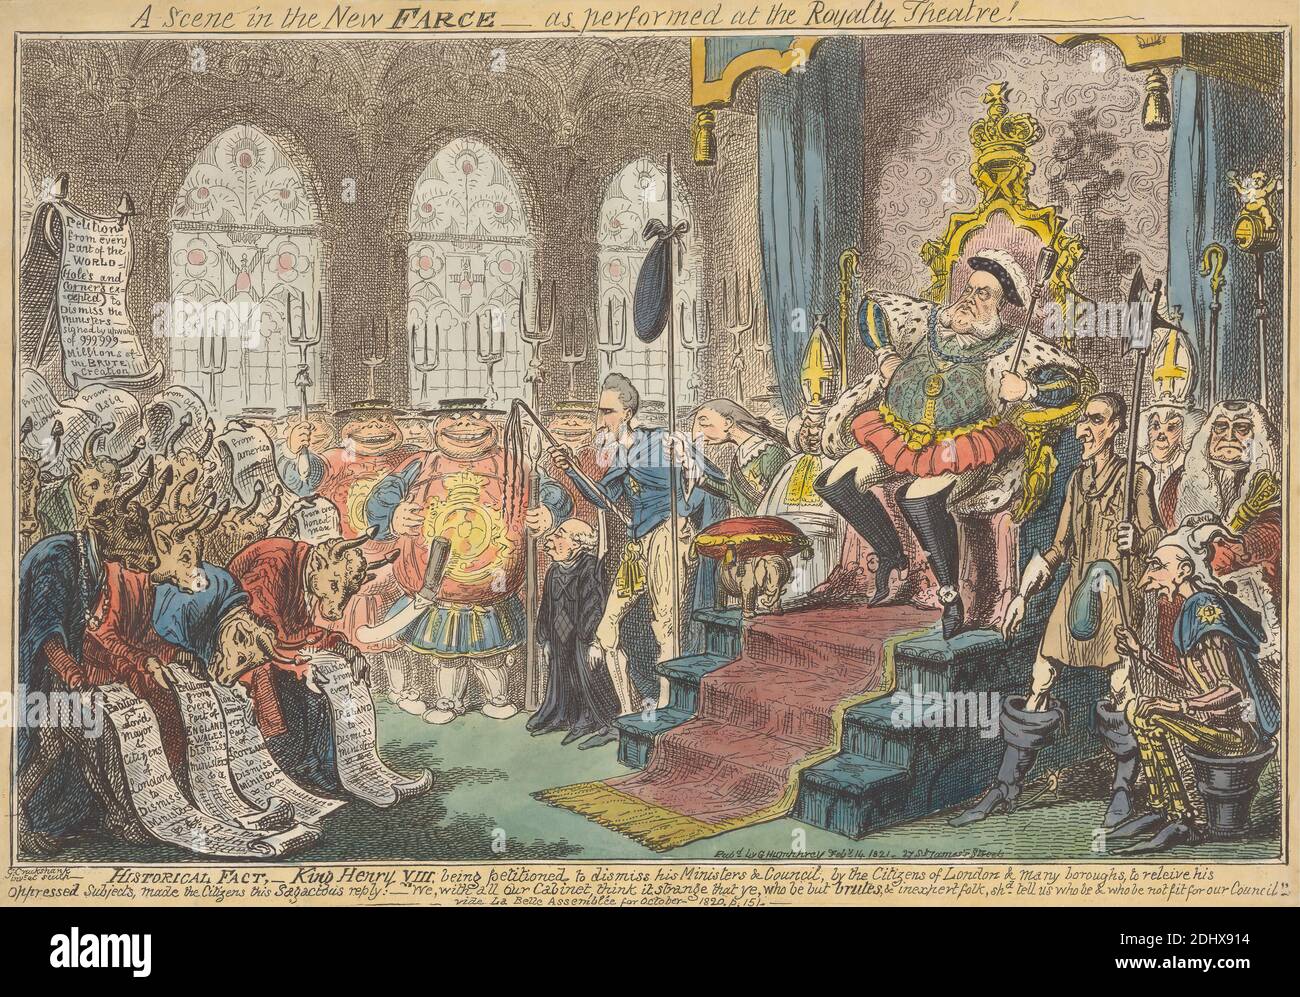 A Scene in the New Farce - come eseguito al Royalty Theatre!, Stampa realizzata da George Cruikshank, 1792–1878, inglese, pubblicato da George Humphrey, ca. 1773–ca. 1831, inglese, 1821, incisione, colore a mano su carta di spessore moderato, leggermente testurizzata, wove beige, foglio: 9 1/2 x 13 5/8 pollici (24.2 x 34.6 cm) e immagine: 8 9/16 x 13 1/8 pollici (21.7 x 33.3 cm), animali, assi, vescovi, cowing, bruti, tori, caricatura, cancelliere, partecipazione cittadina, corte, elefante (animale), soggetto storico, zebre, corna, jester, re, ministri, obesi, carte, petizioni, satira, soldati, trono, Città di Foto Stock